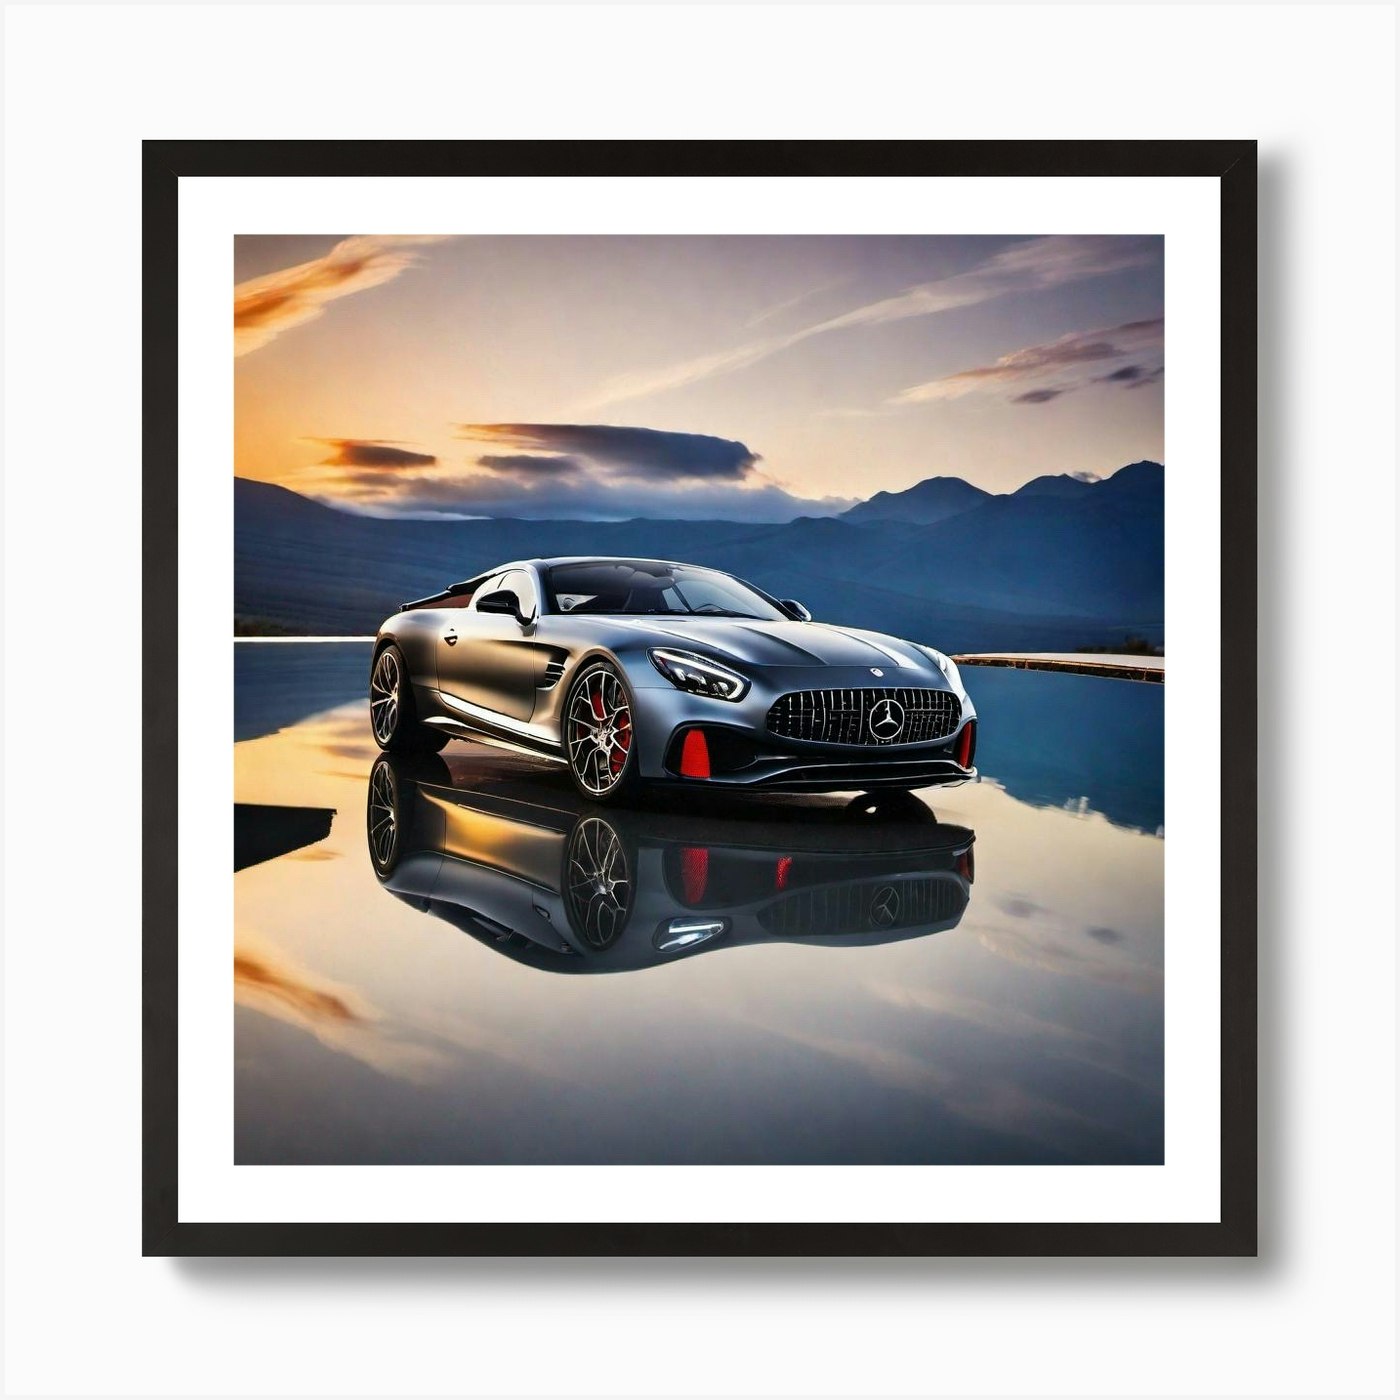 Wall Art Print Mercedes AMG GTR Car Poster, Gifts & Merchandise